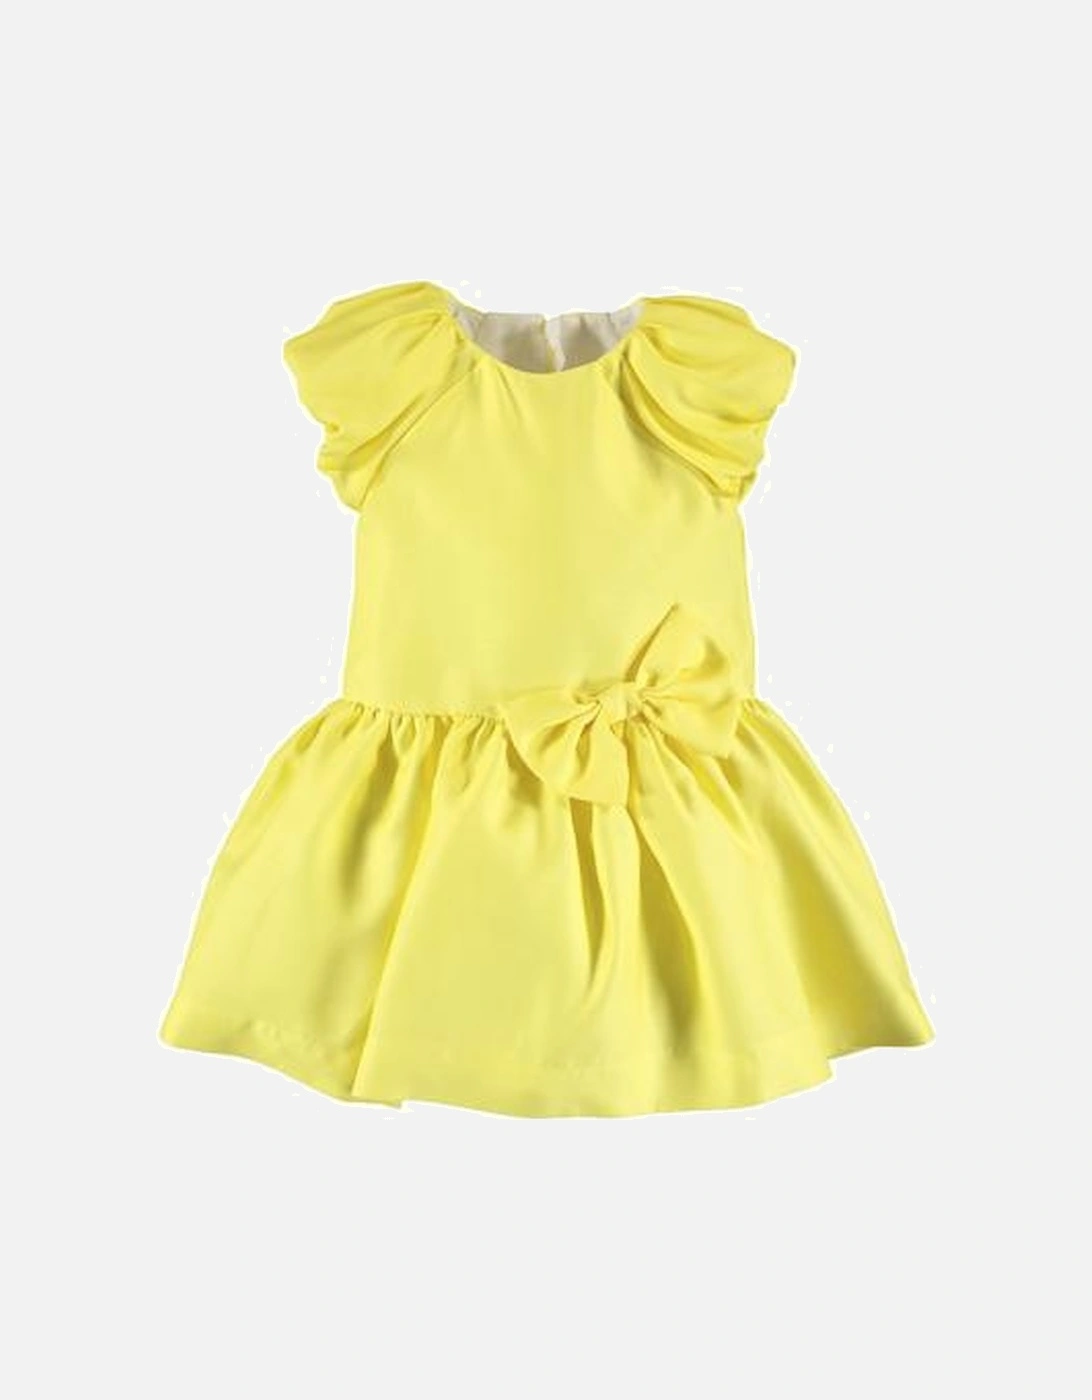 Girls Yellow Dress, 2 of 1